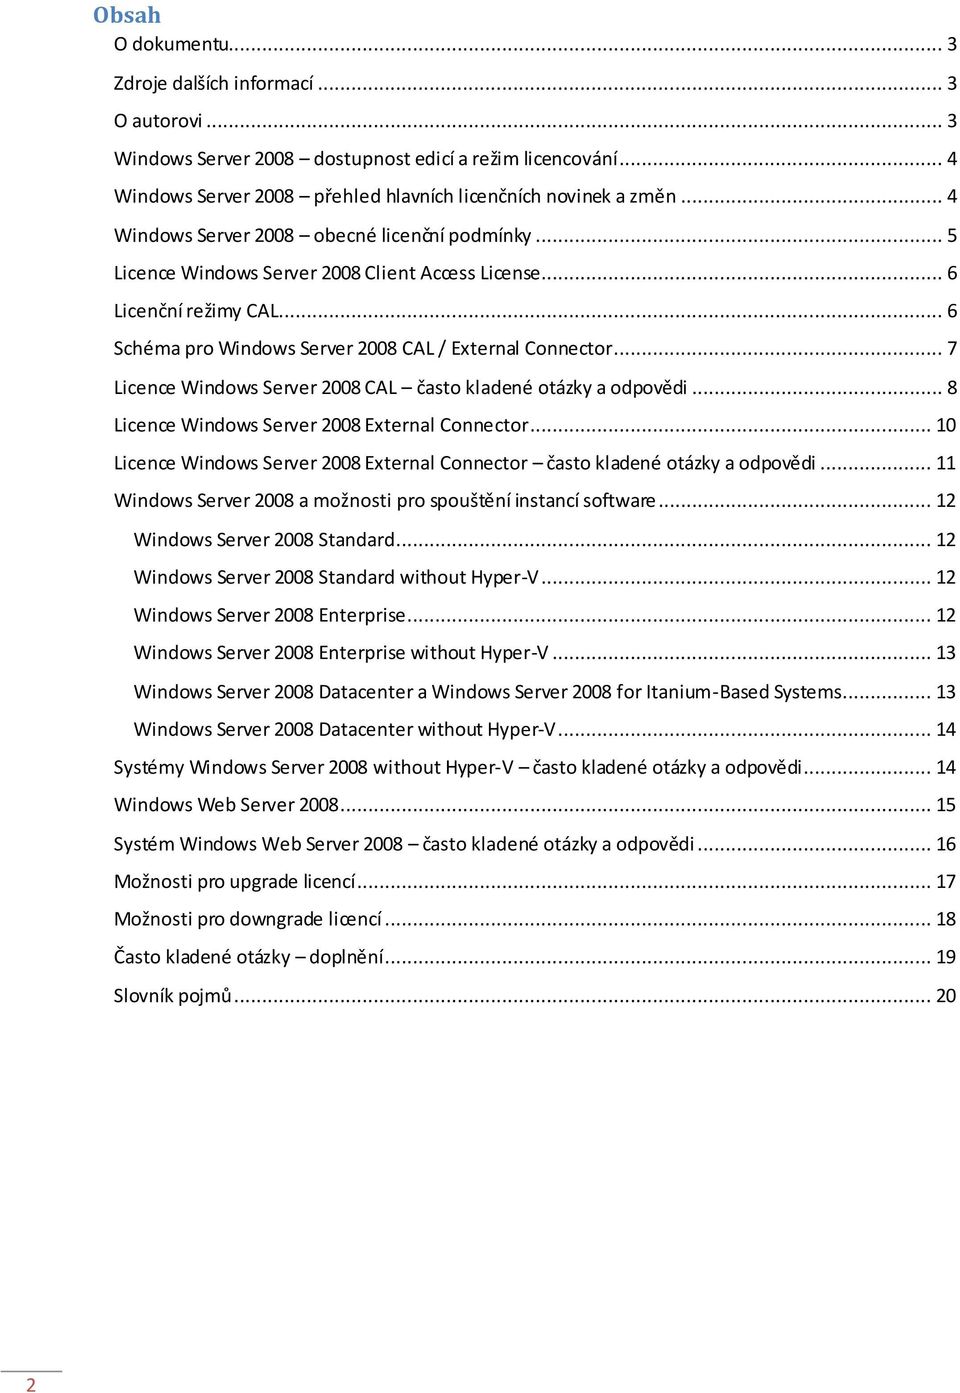 .. 7 Licence Windows Server 2008 CAL často kladené otázky a odpovědi... 8 Licence Windows Server 2008 External Connector.